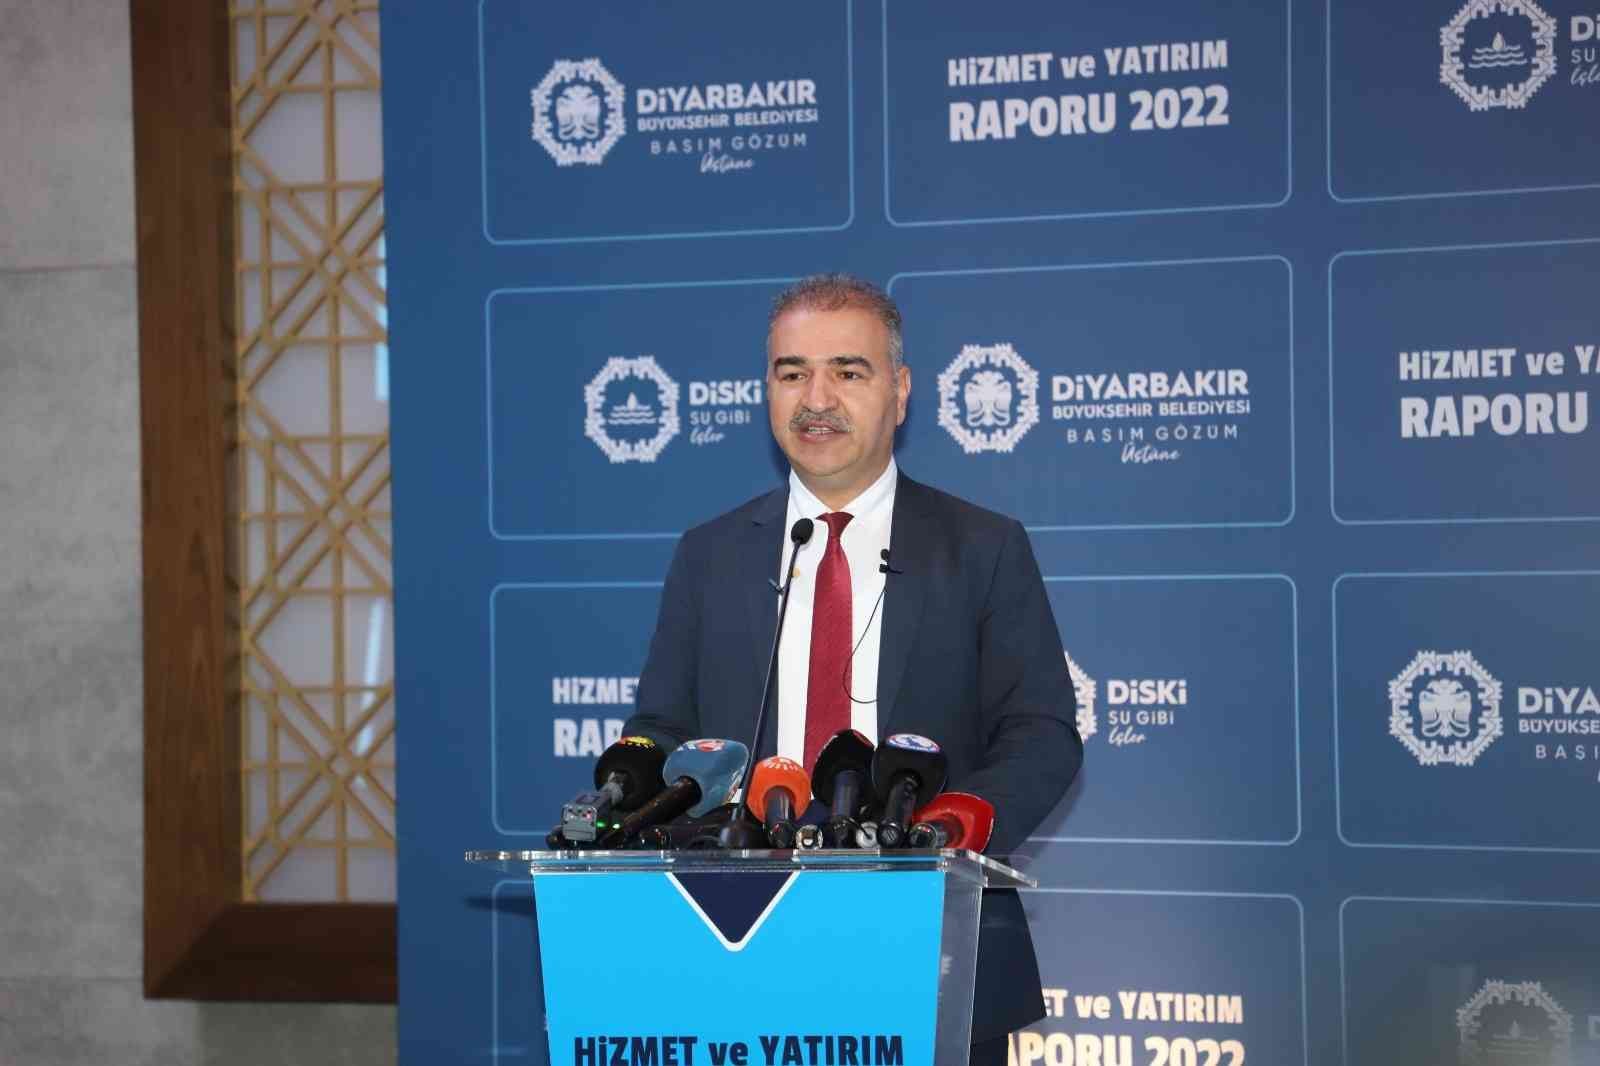 Diyarbakır’ın altyapısını güçlendirmek için 16 büyük proje hayata geçirildi #diyarbakir